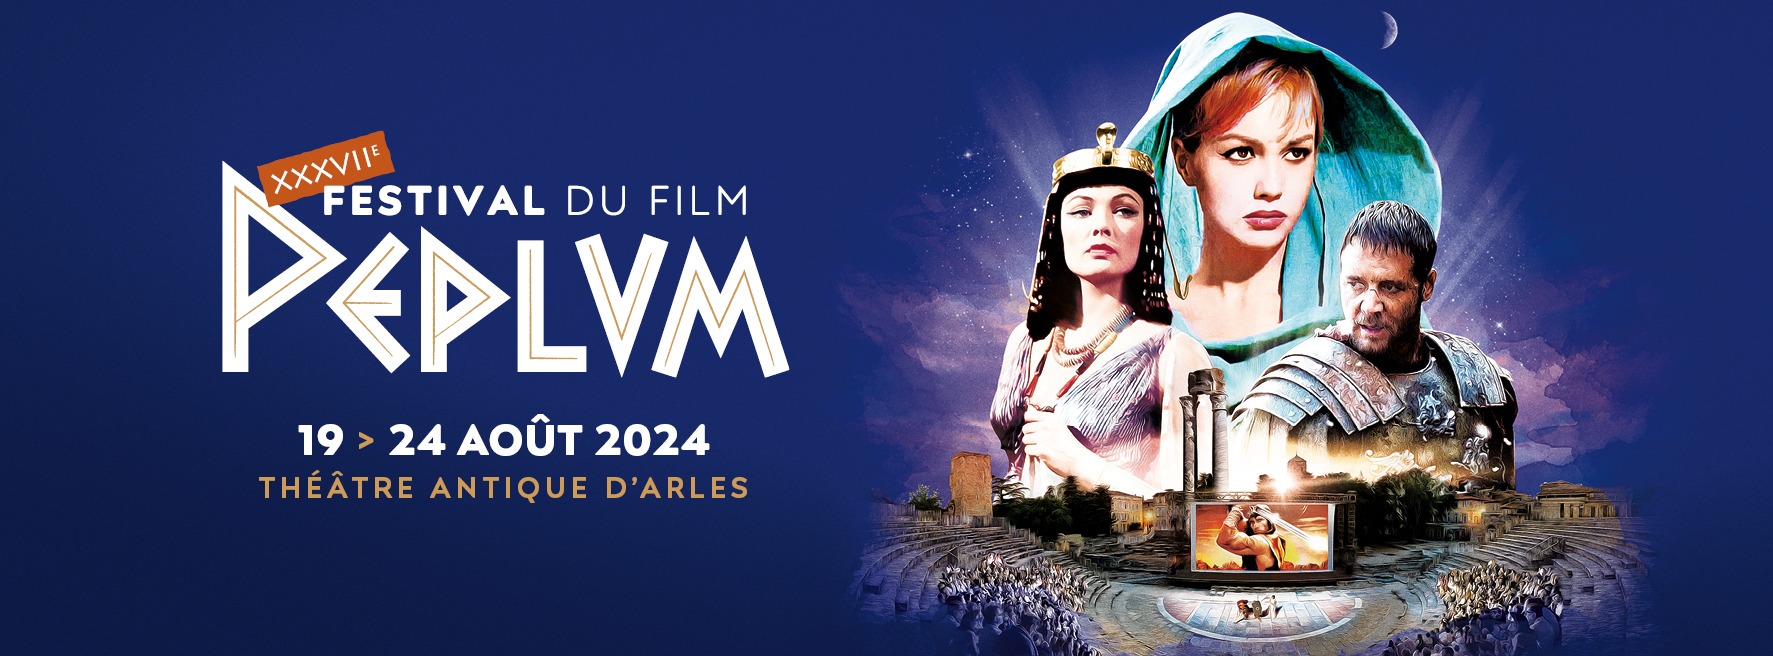 festival du film peplum 2024 Arles